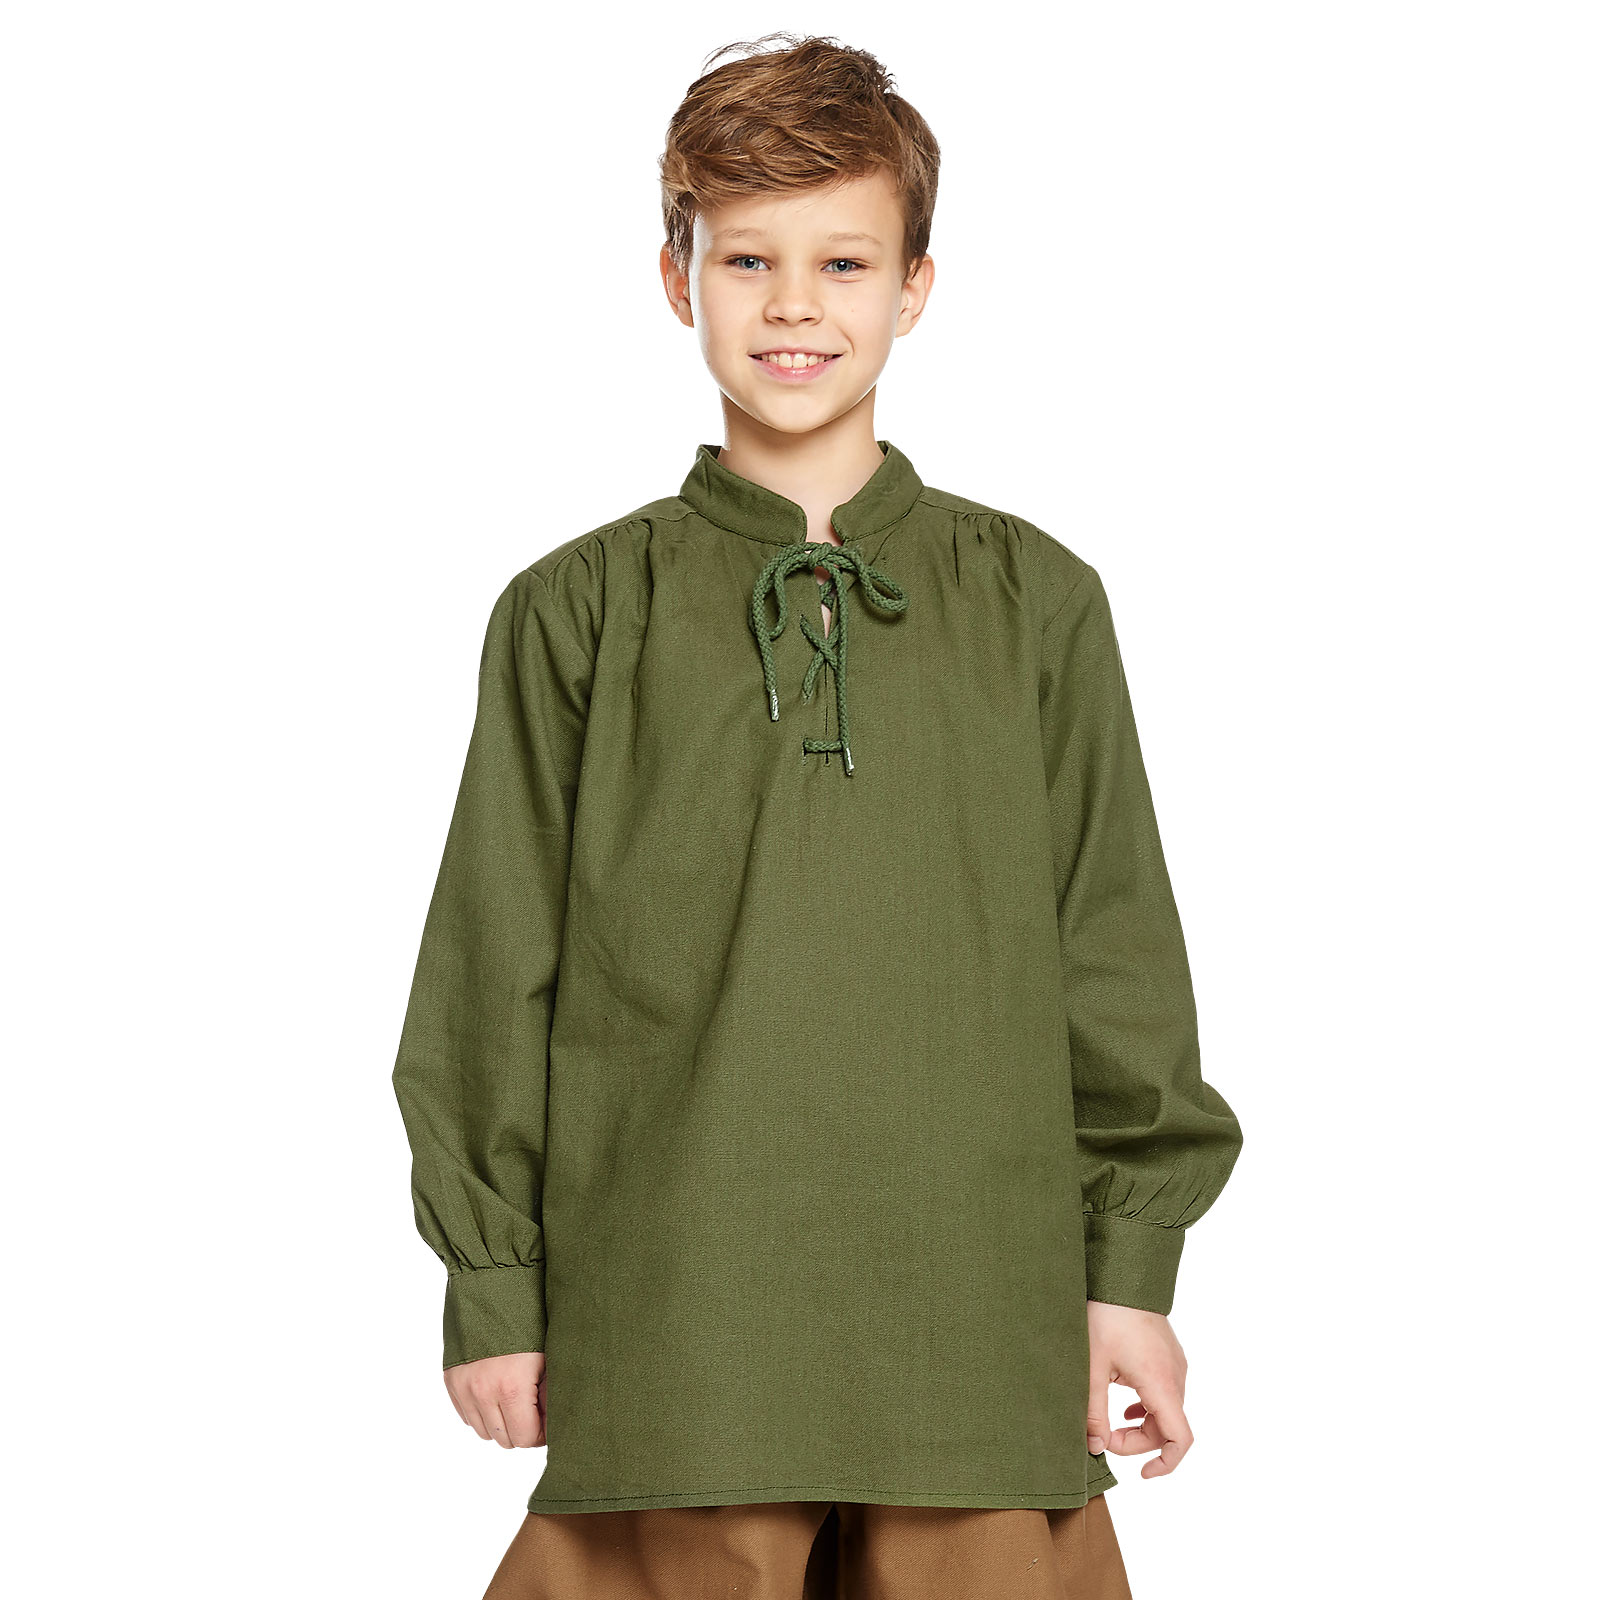 Chemise médiévale pour enfants avec laçage arrière noble vert